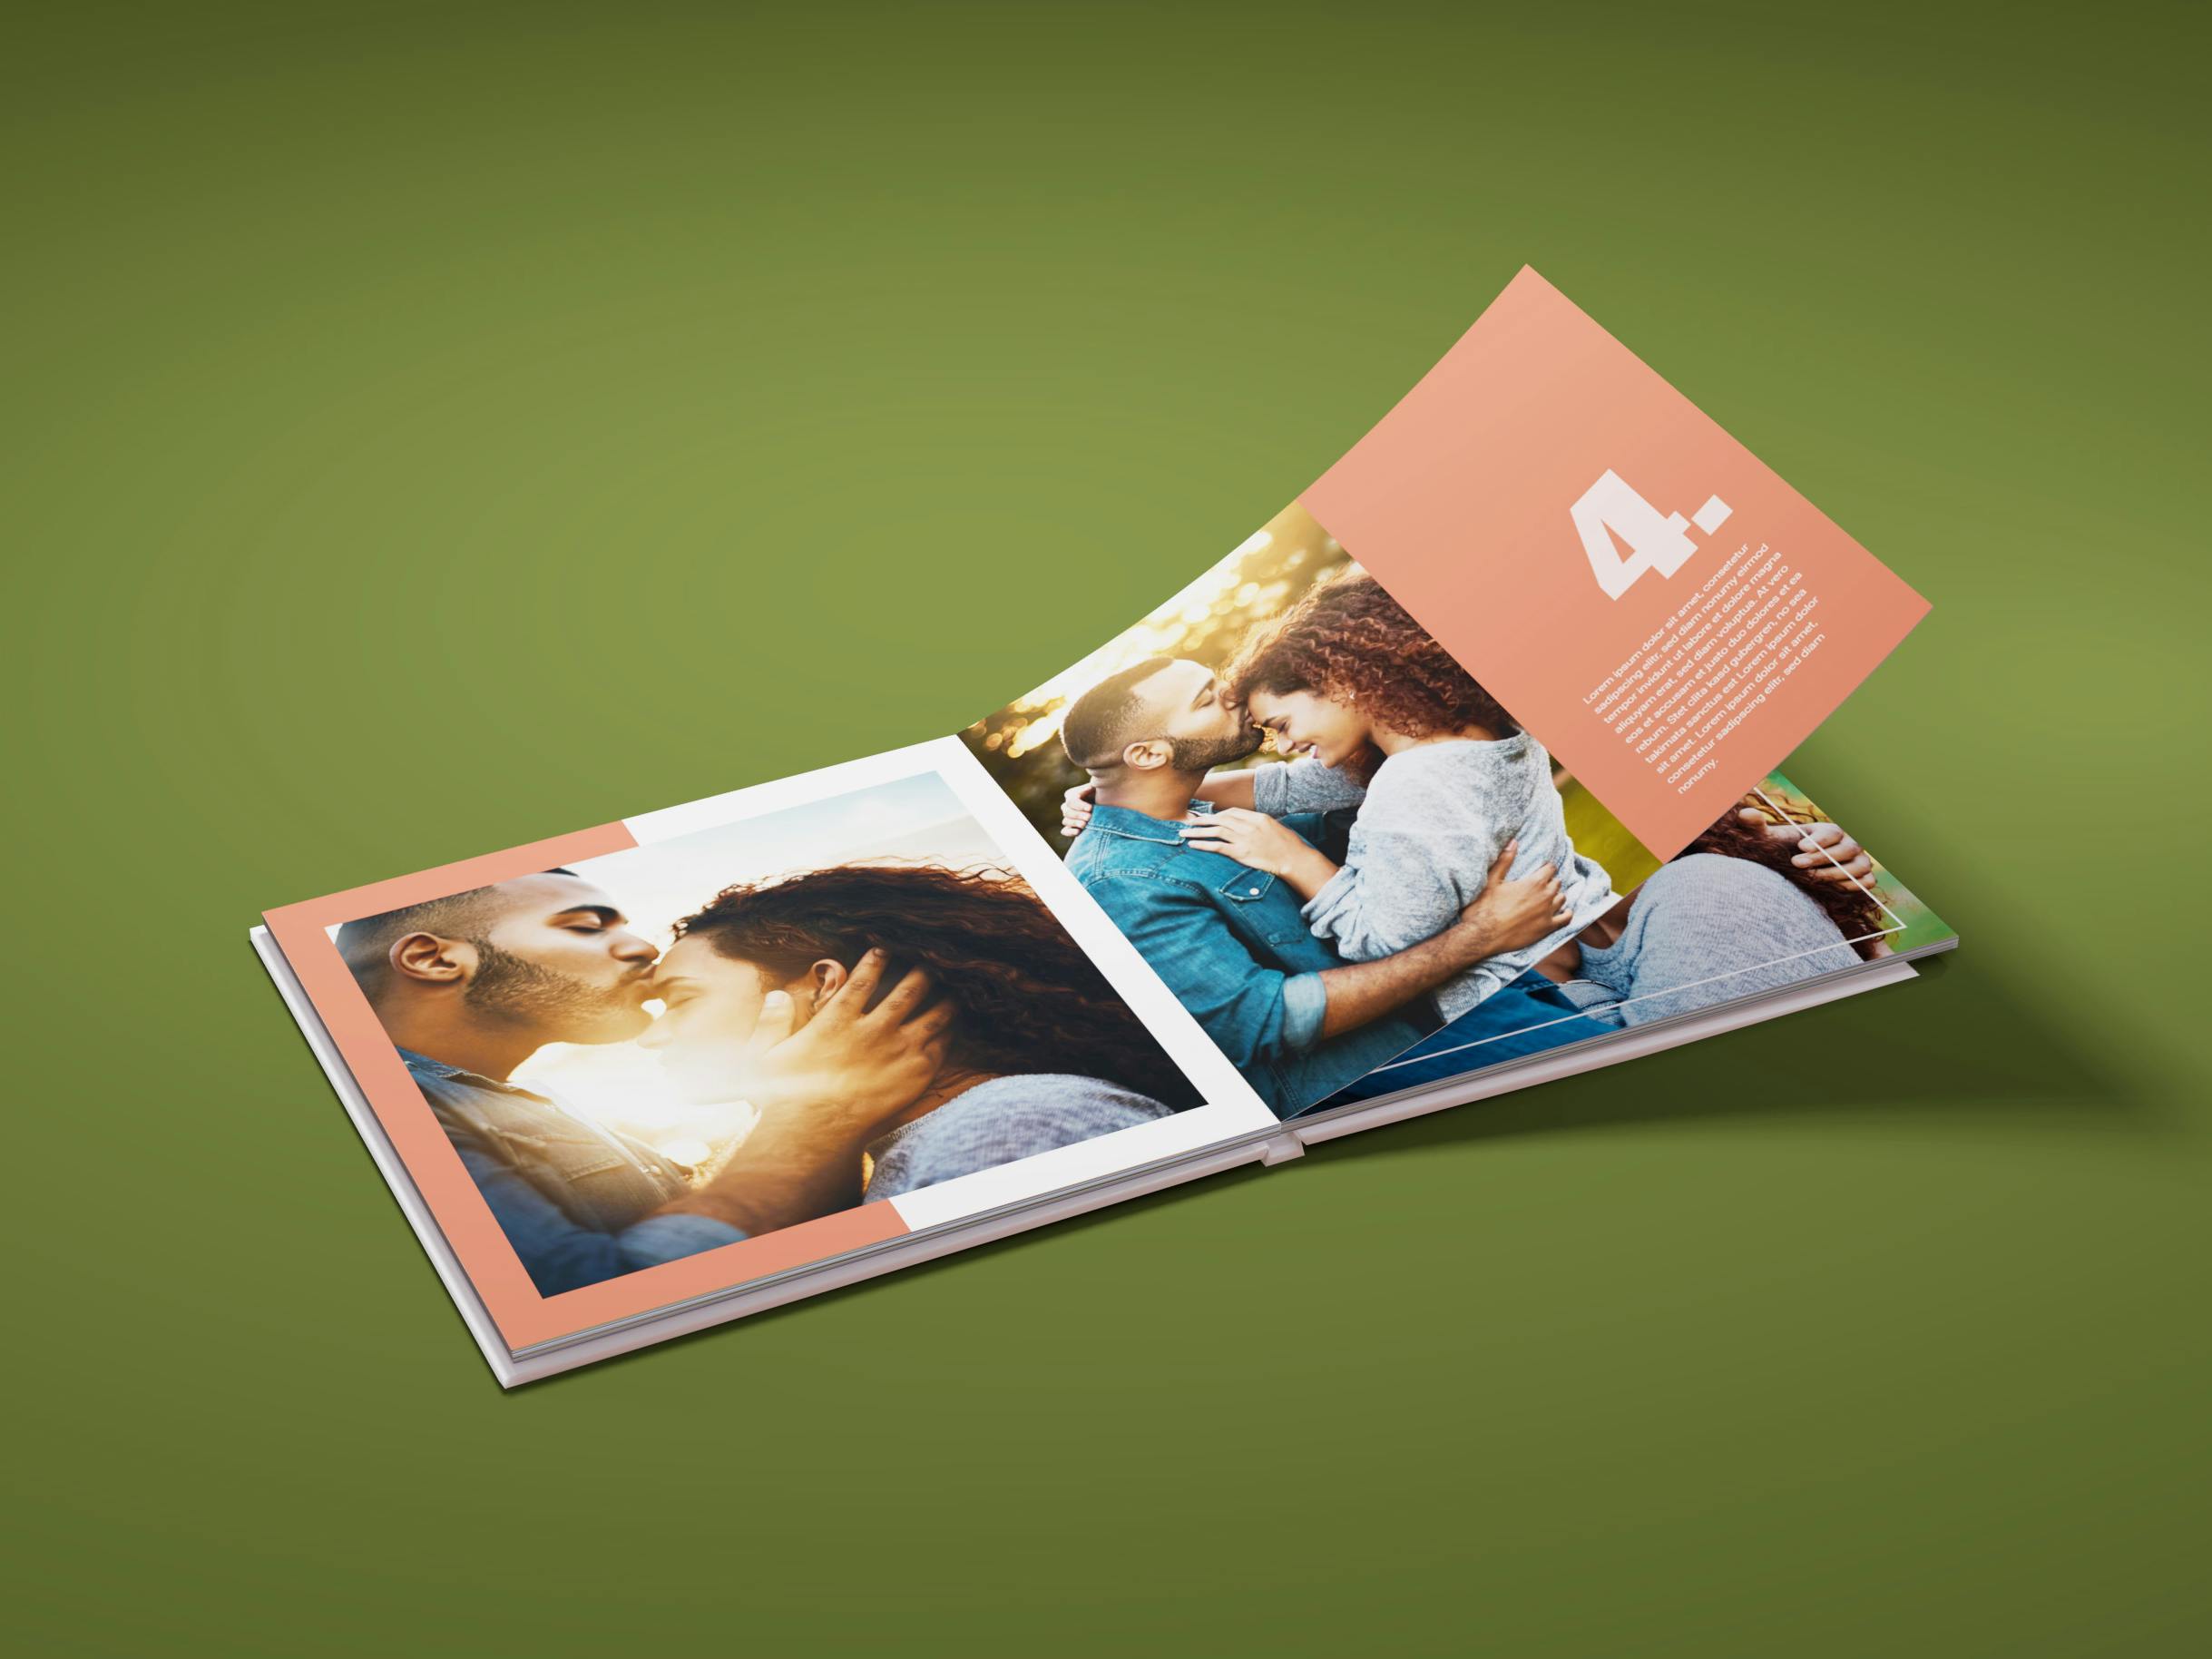 Álbumes de fotos cuadrados con fotos de una pareja en un fondo verde